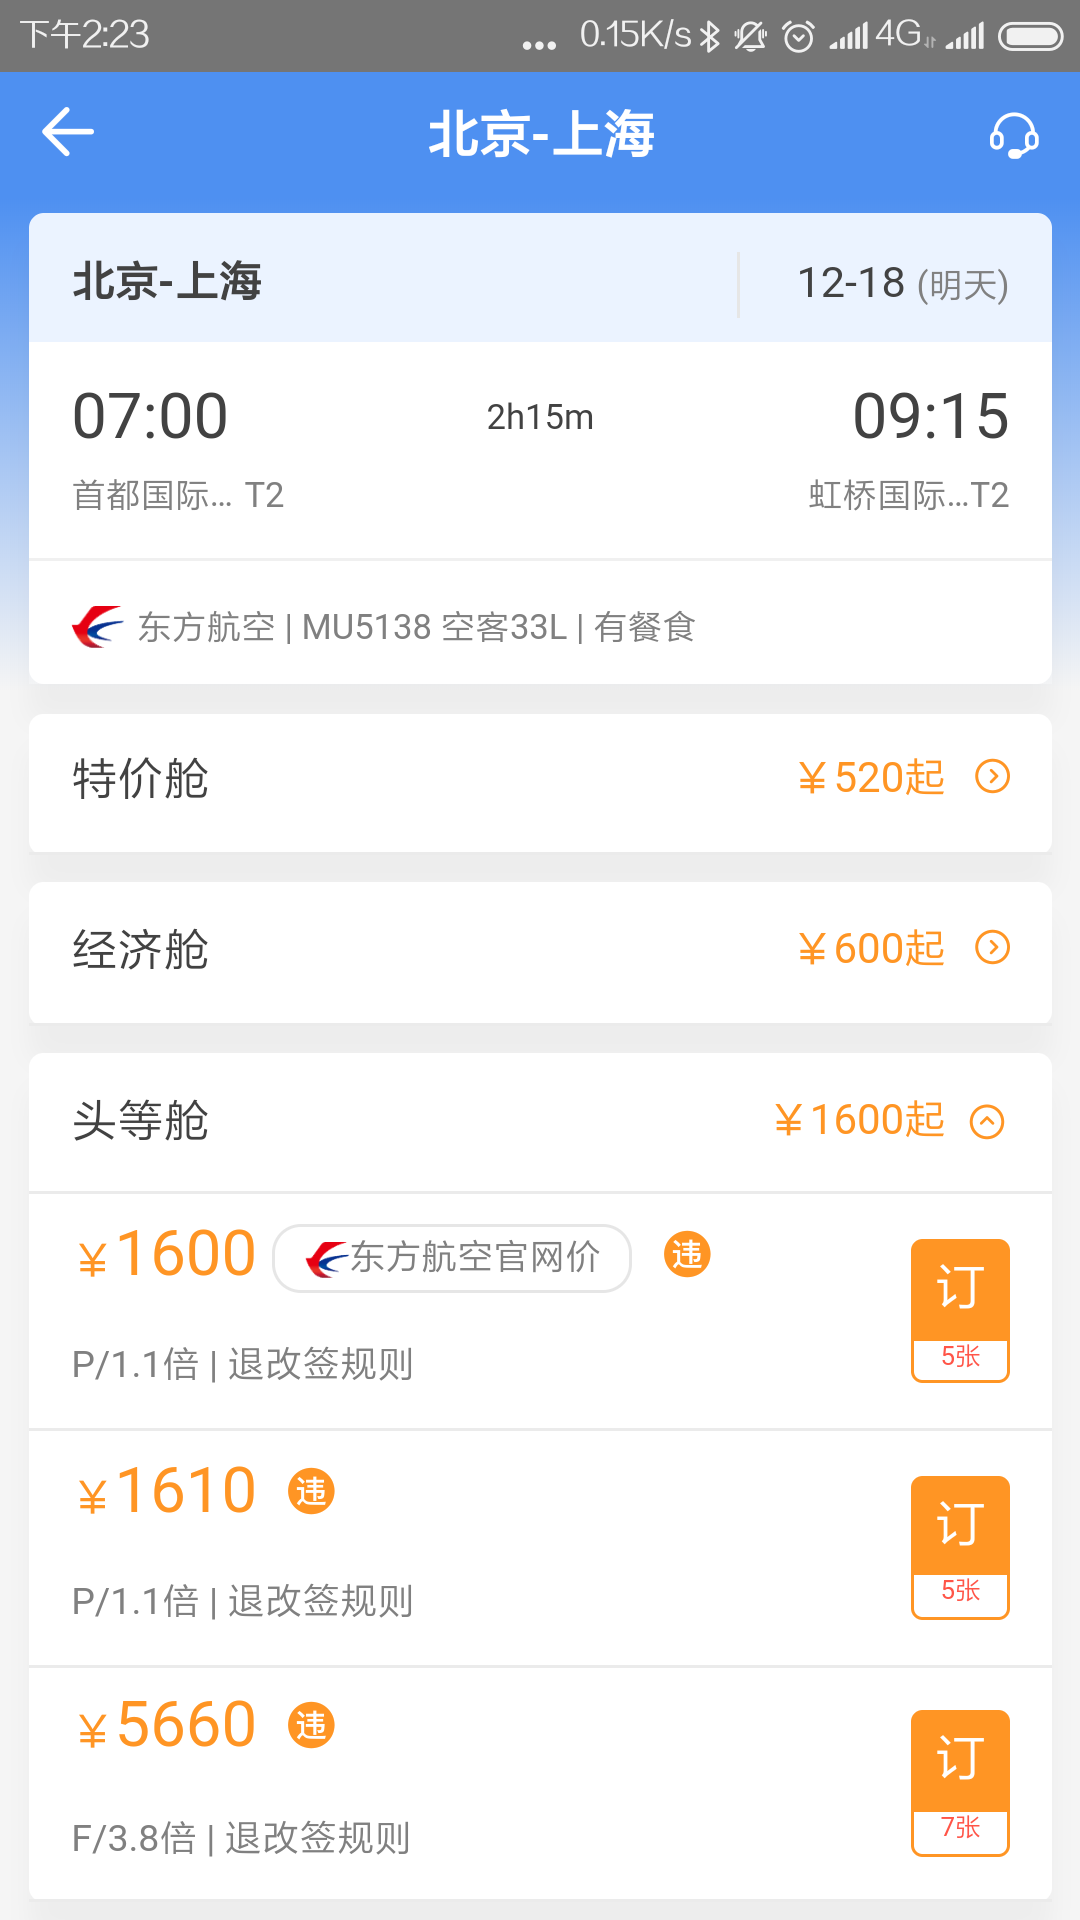 空港嘉華app軟件官方版圖1: